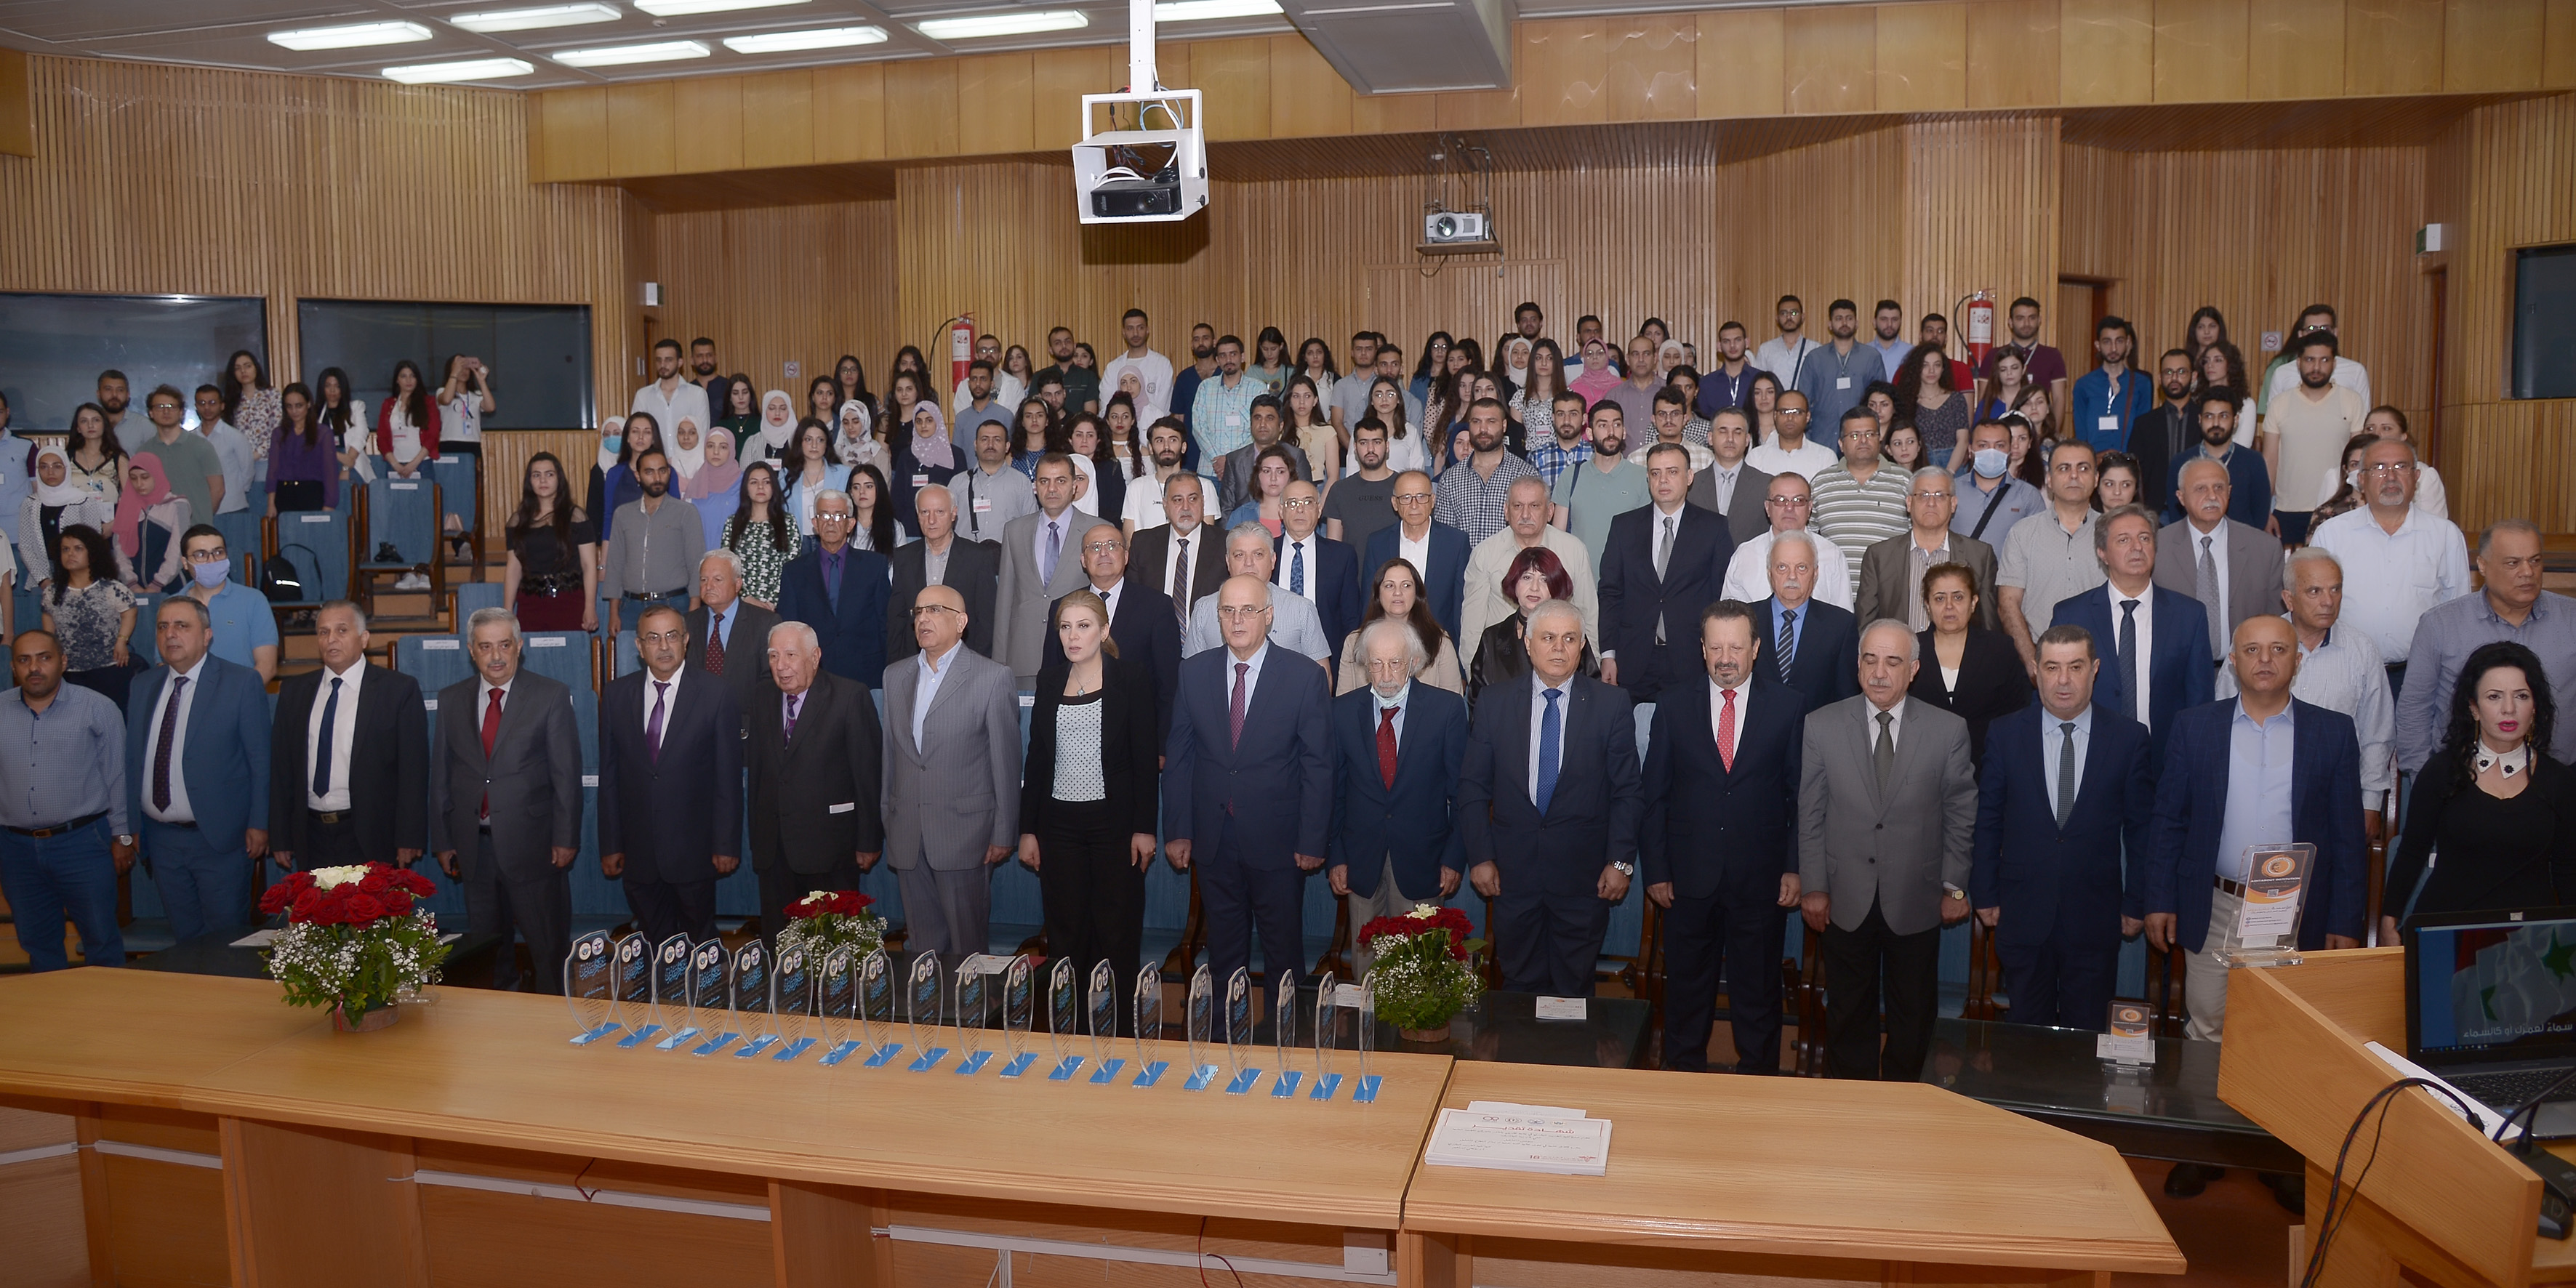 صور من أفتتاح مؤتمر كلية الطب البشري بجامعة تشرين